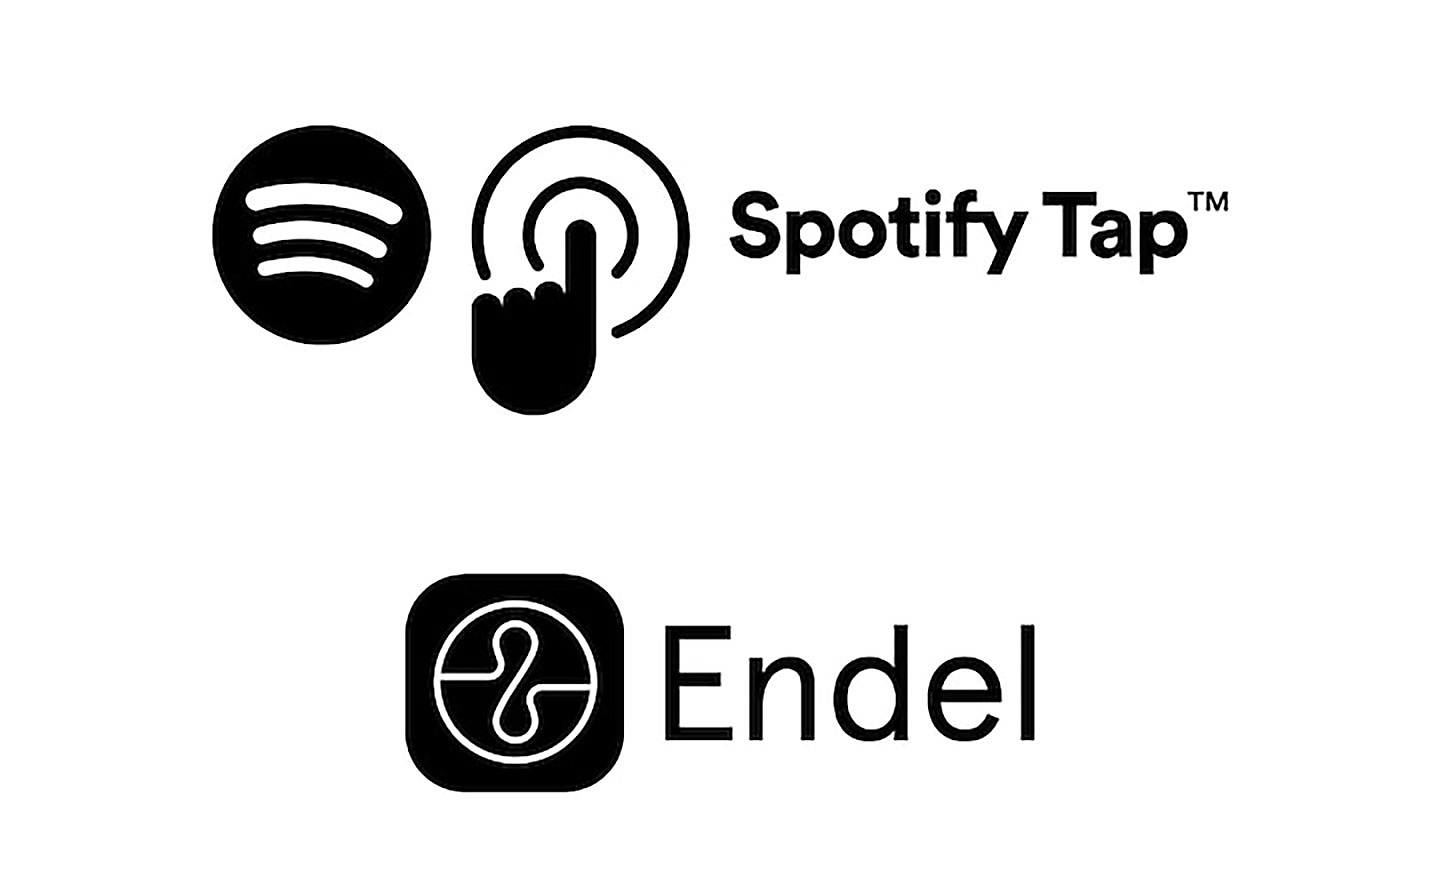 Зображення логотипів Spotify та Spotify tap над логотипом Endel